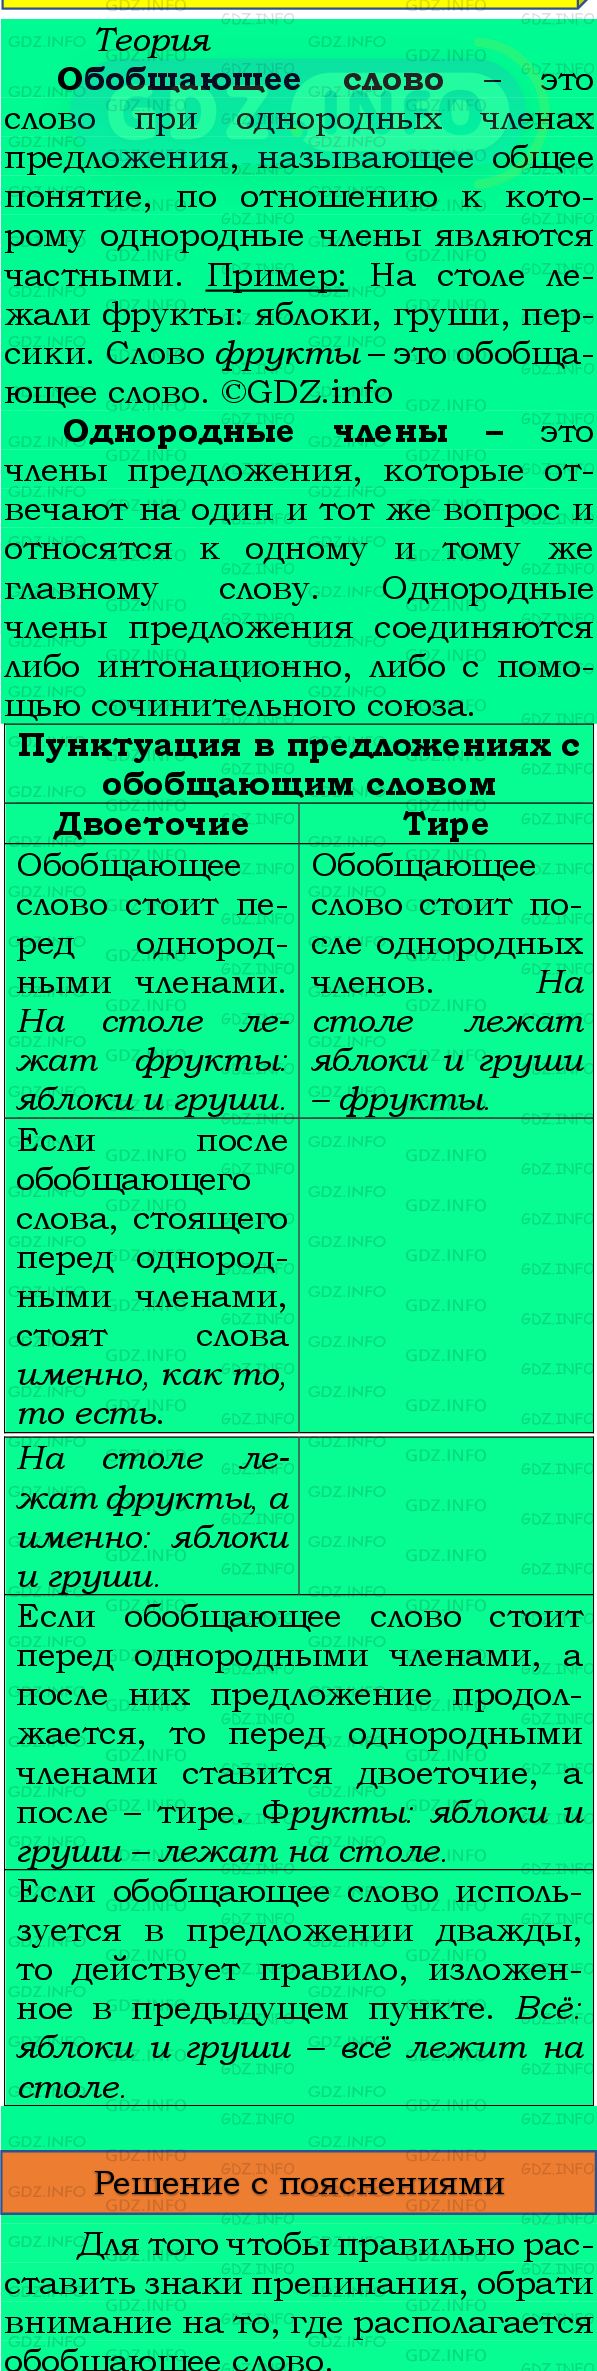 Фото подробного решения: Номер №362 из ГДЗ по Русскому языку 8 класс: Бархударов С.Г.